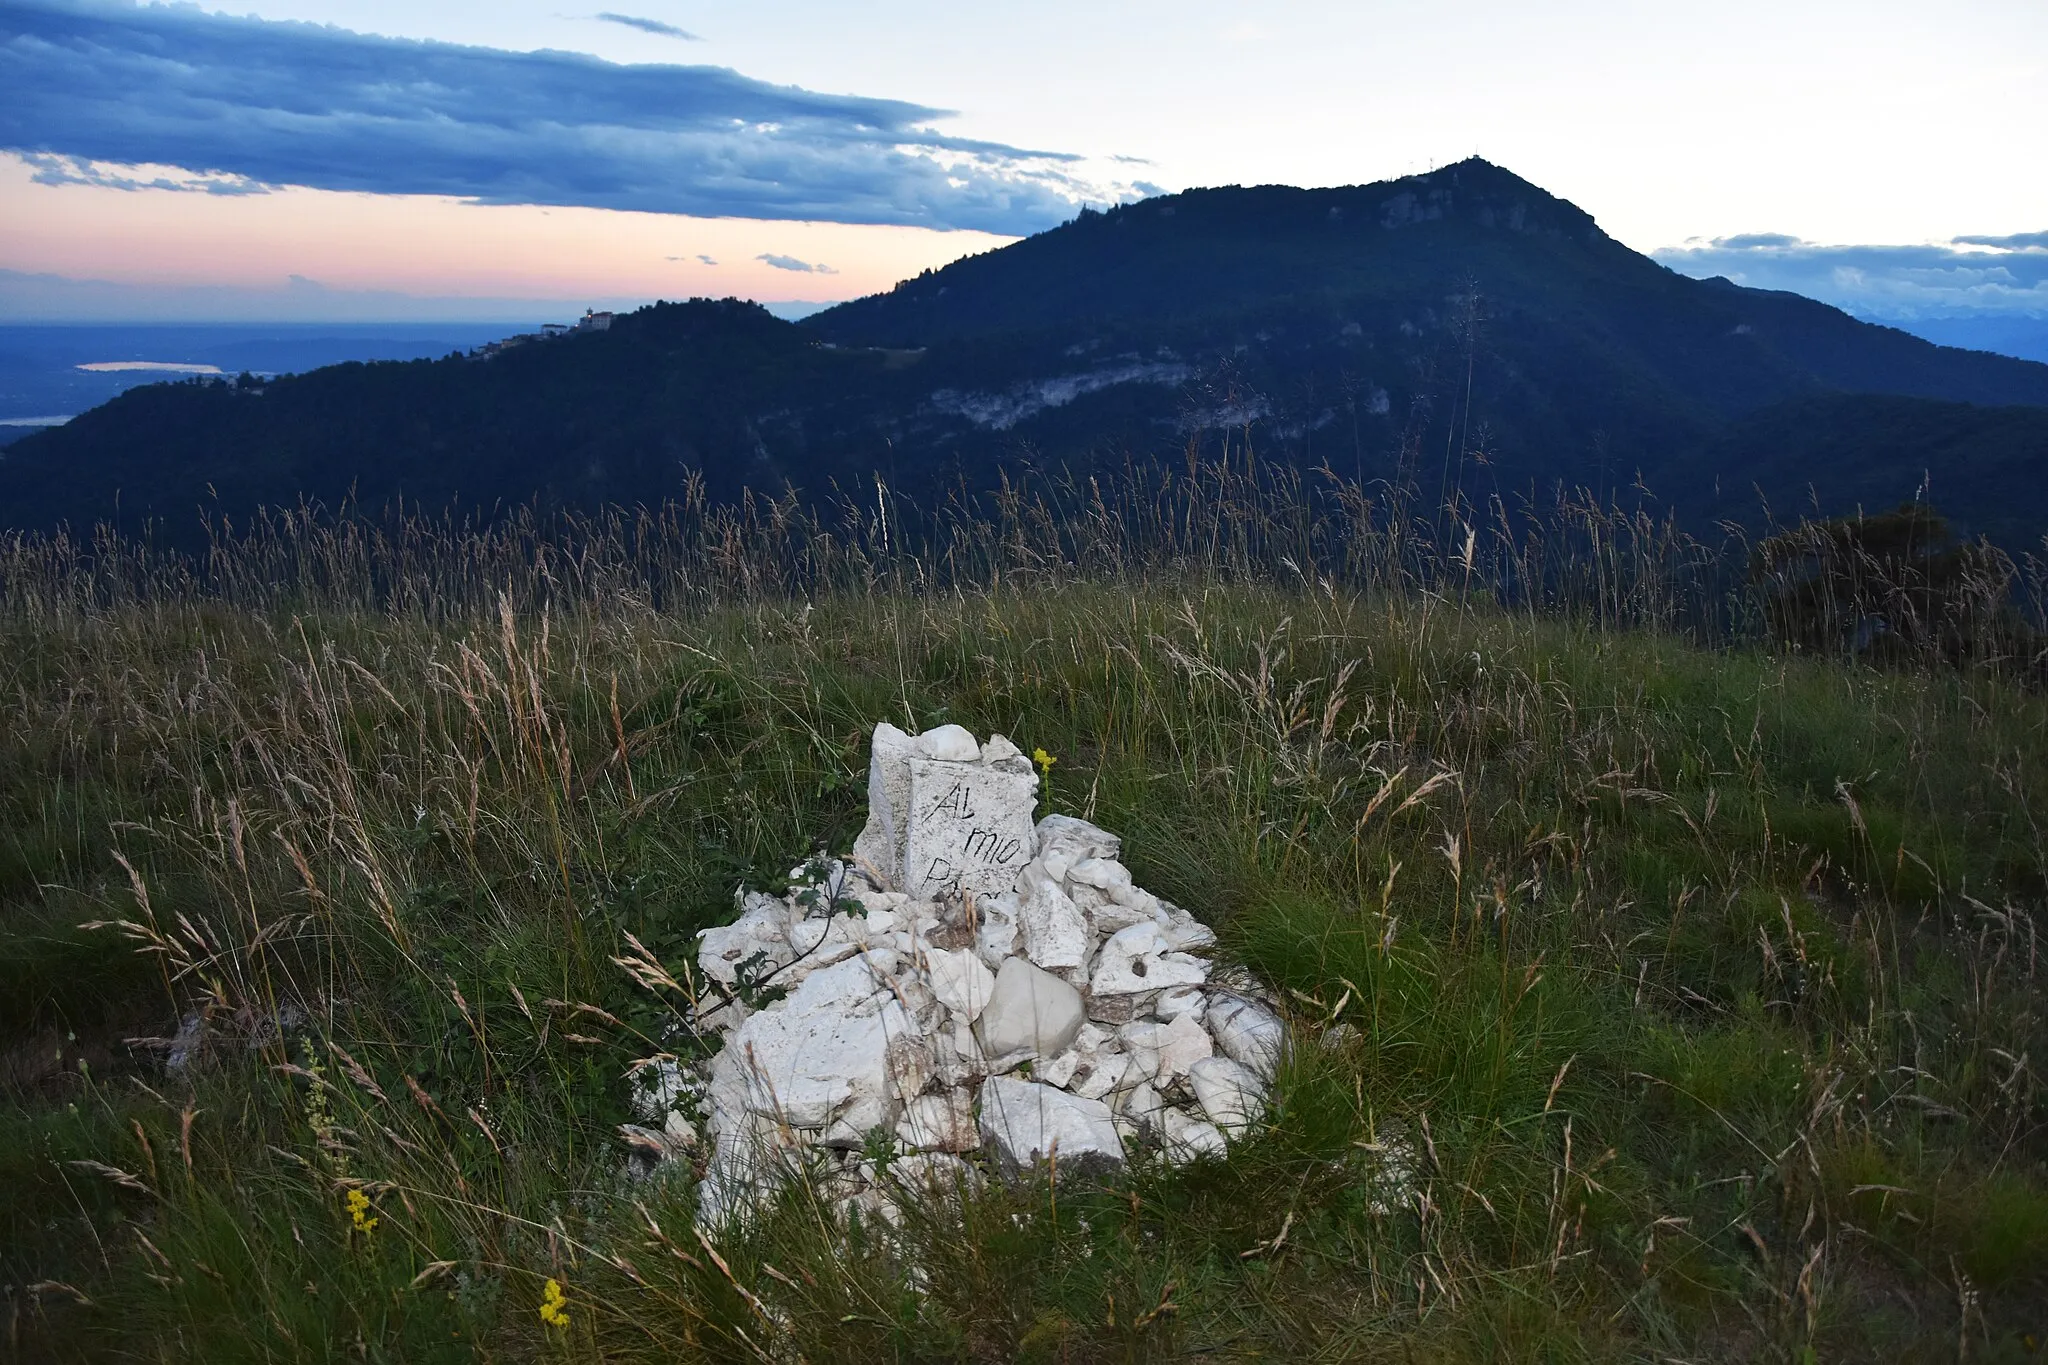 Photo showing: Memoriale nei pressi della cima del monte Chiusarella, in provincia di Varese. Sullo sfondo si vede il massiccio del Campo dei Fiori, con alla sinistra la sommità del Sacro Monte di Varese.